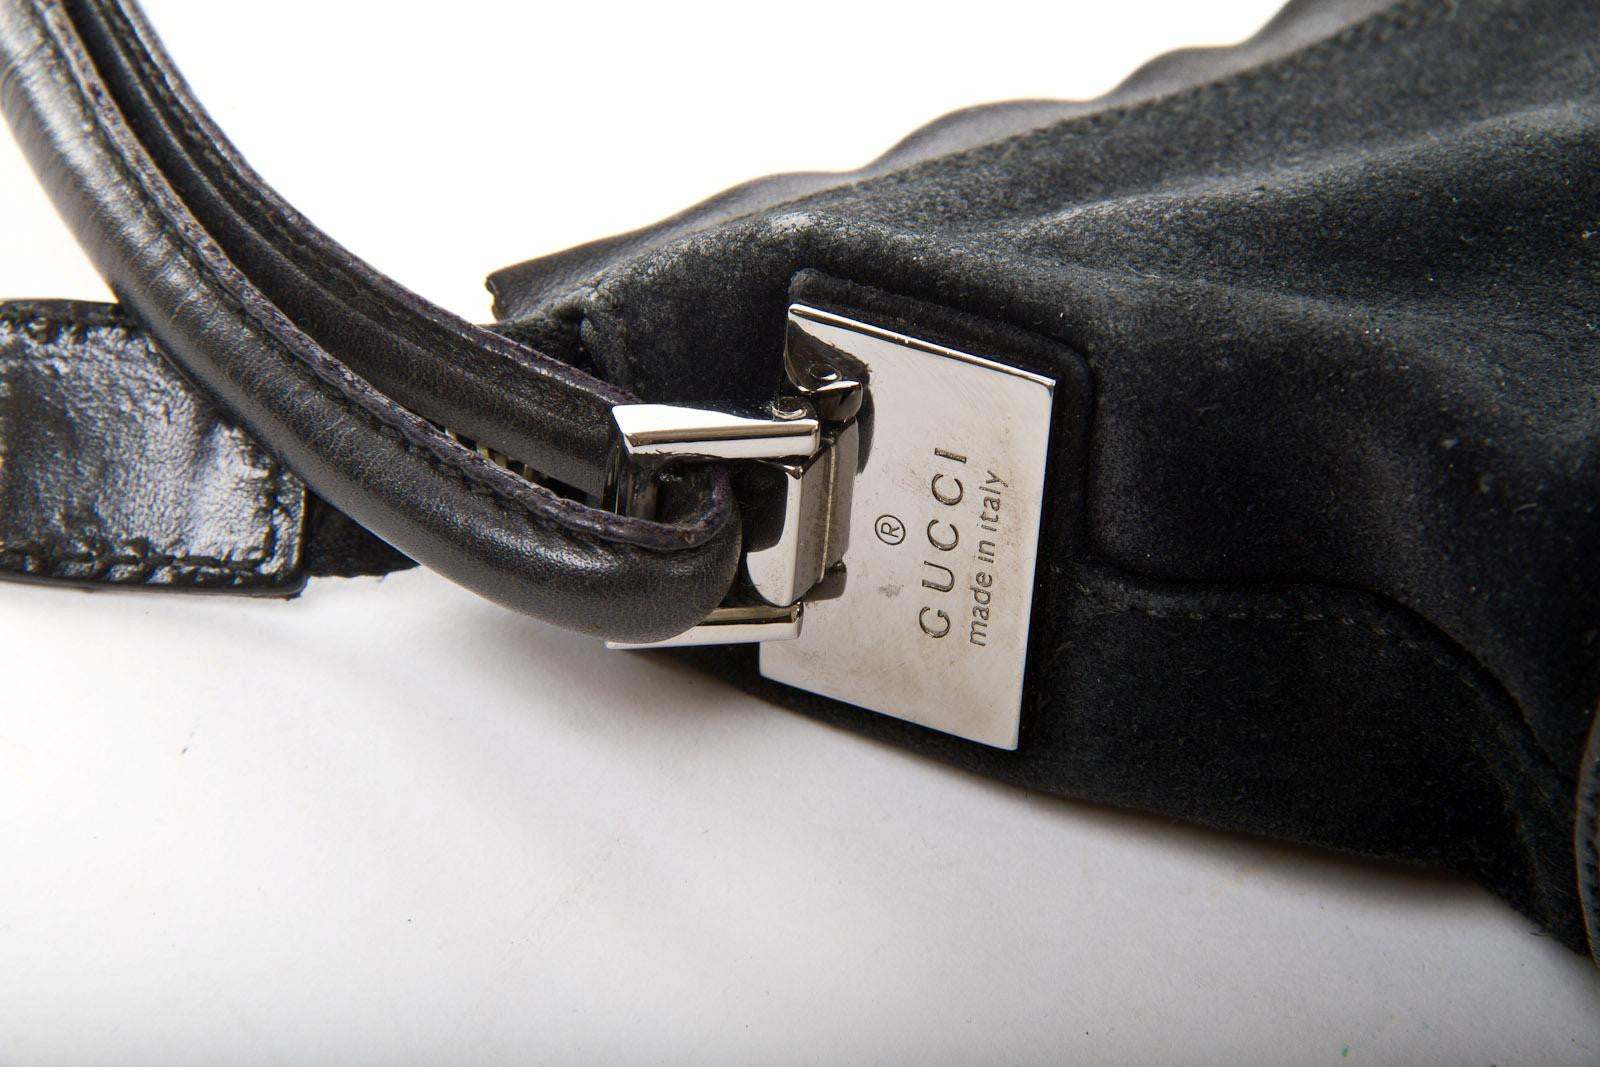 Authentic GUCCI Black Leather Shoulder Bag 